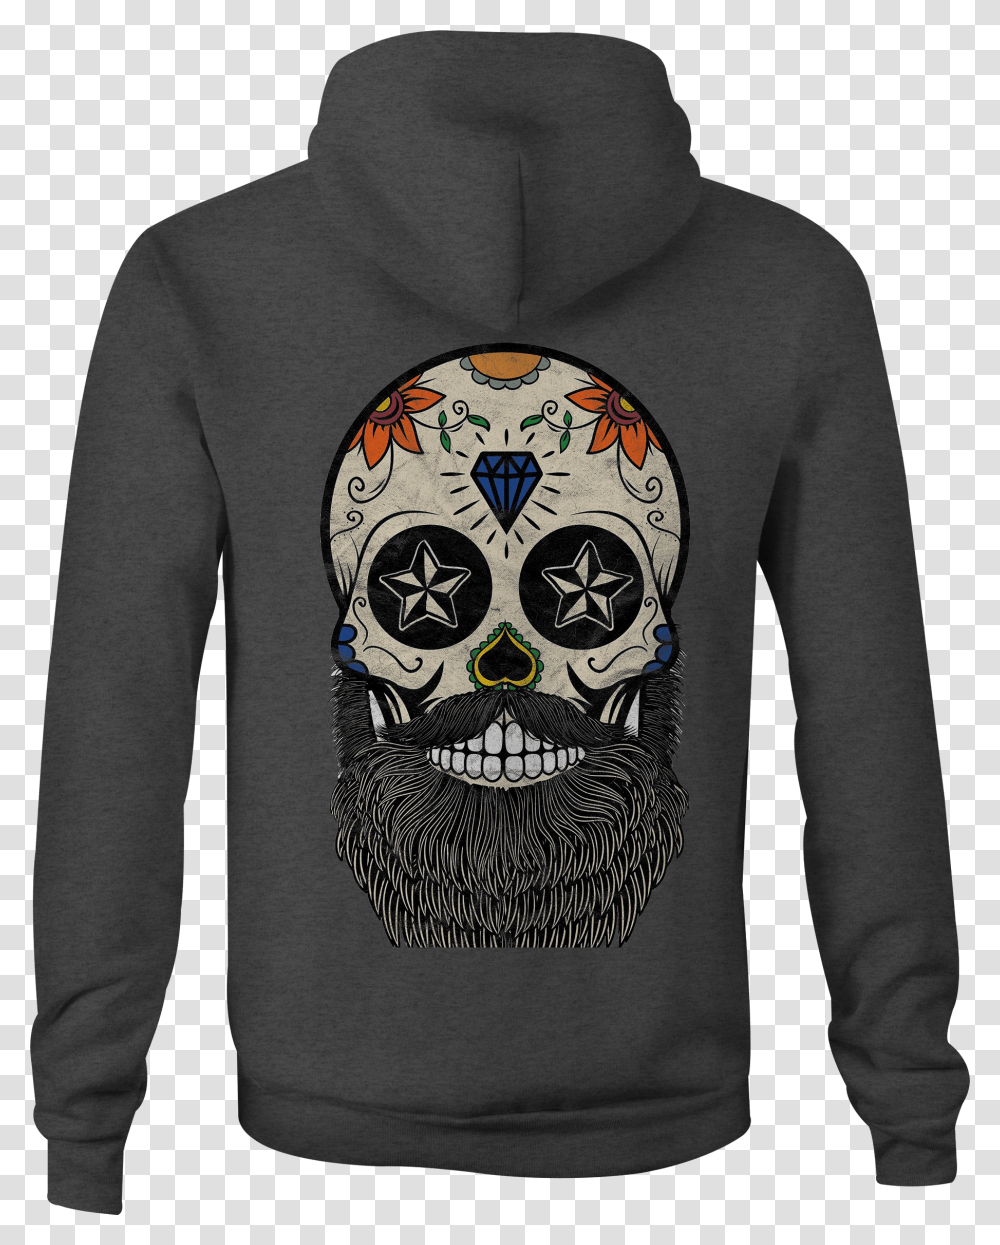 Skull Zip Up Hoodie Bearded Skull Tattoo Hooded Sweatshirt, Sleeve, Apparel, Long Sleeve Transparent Png